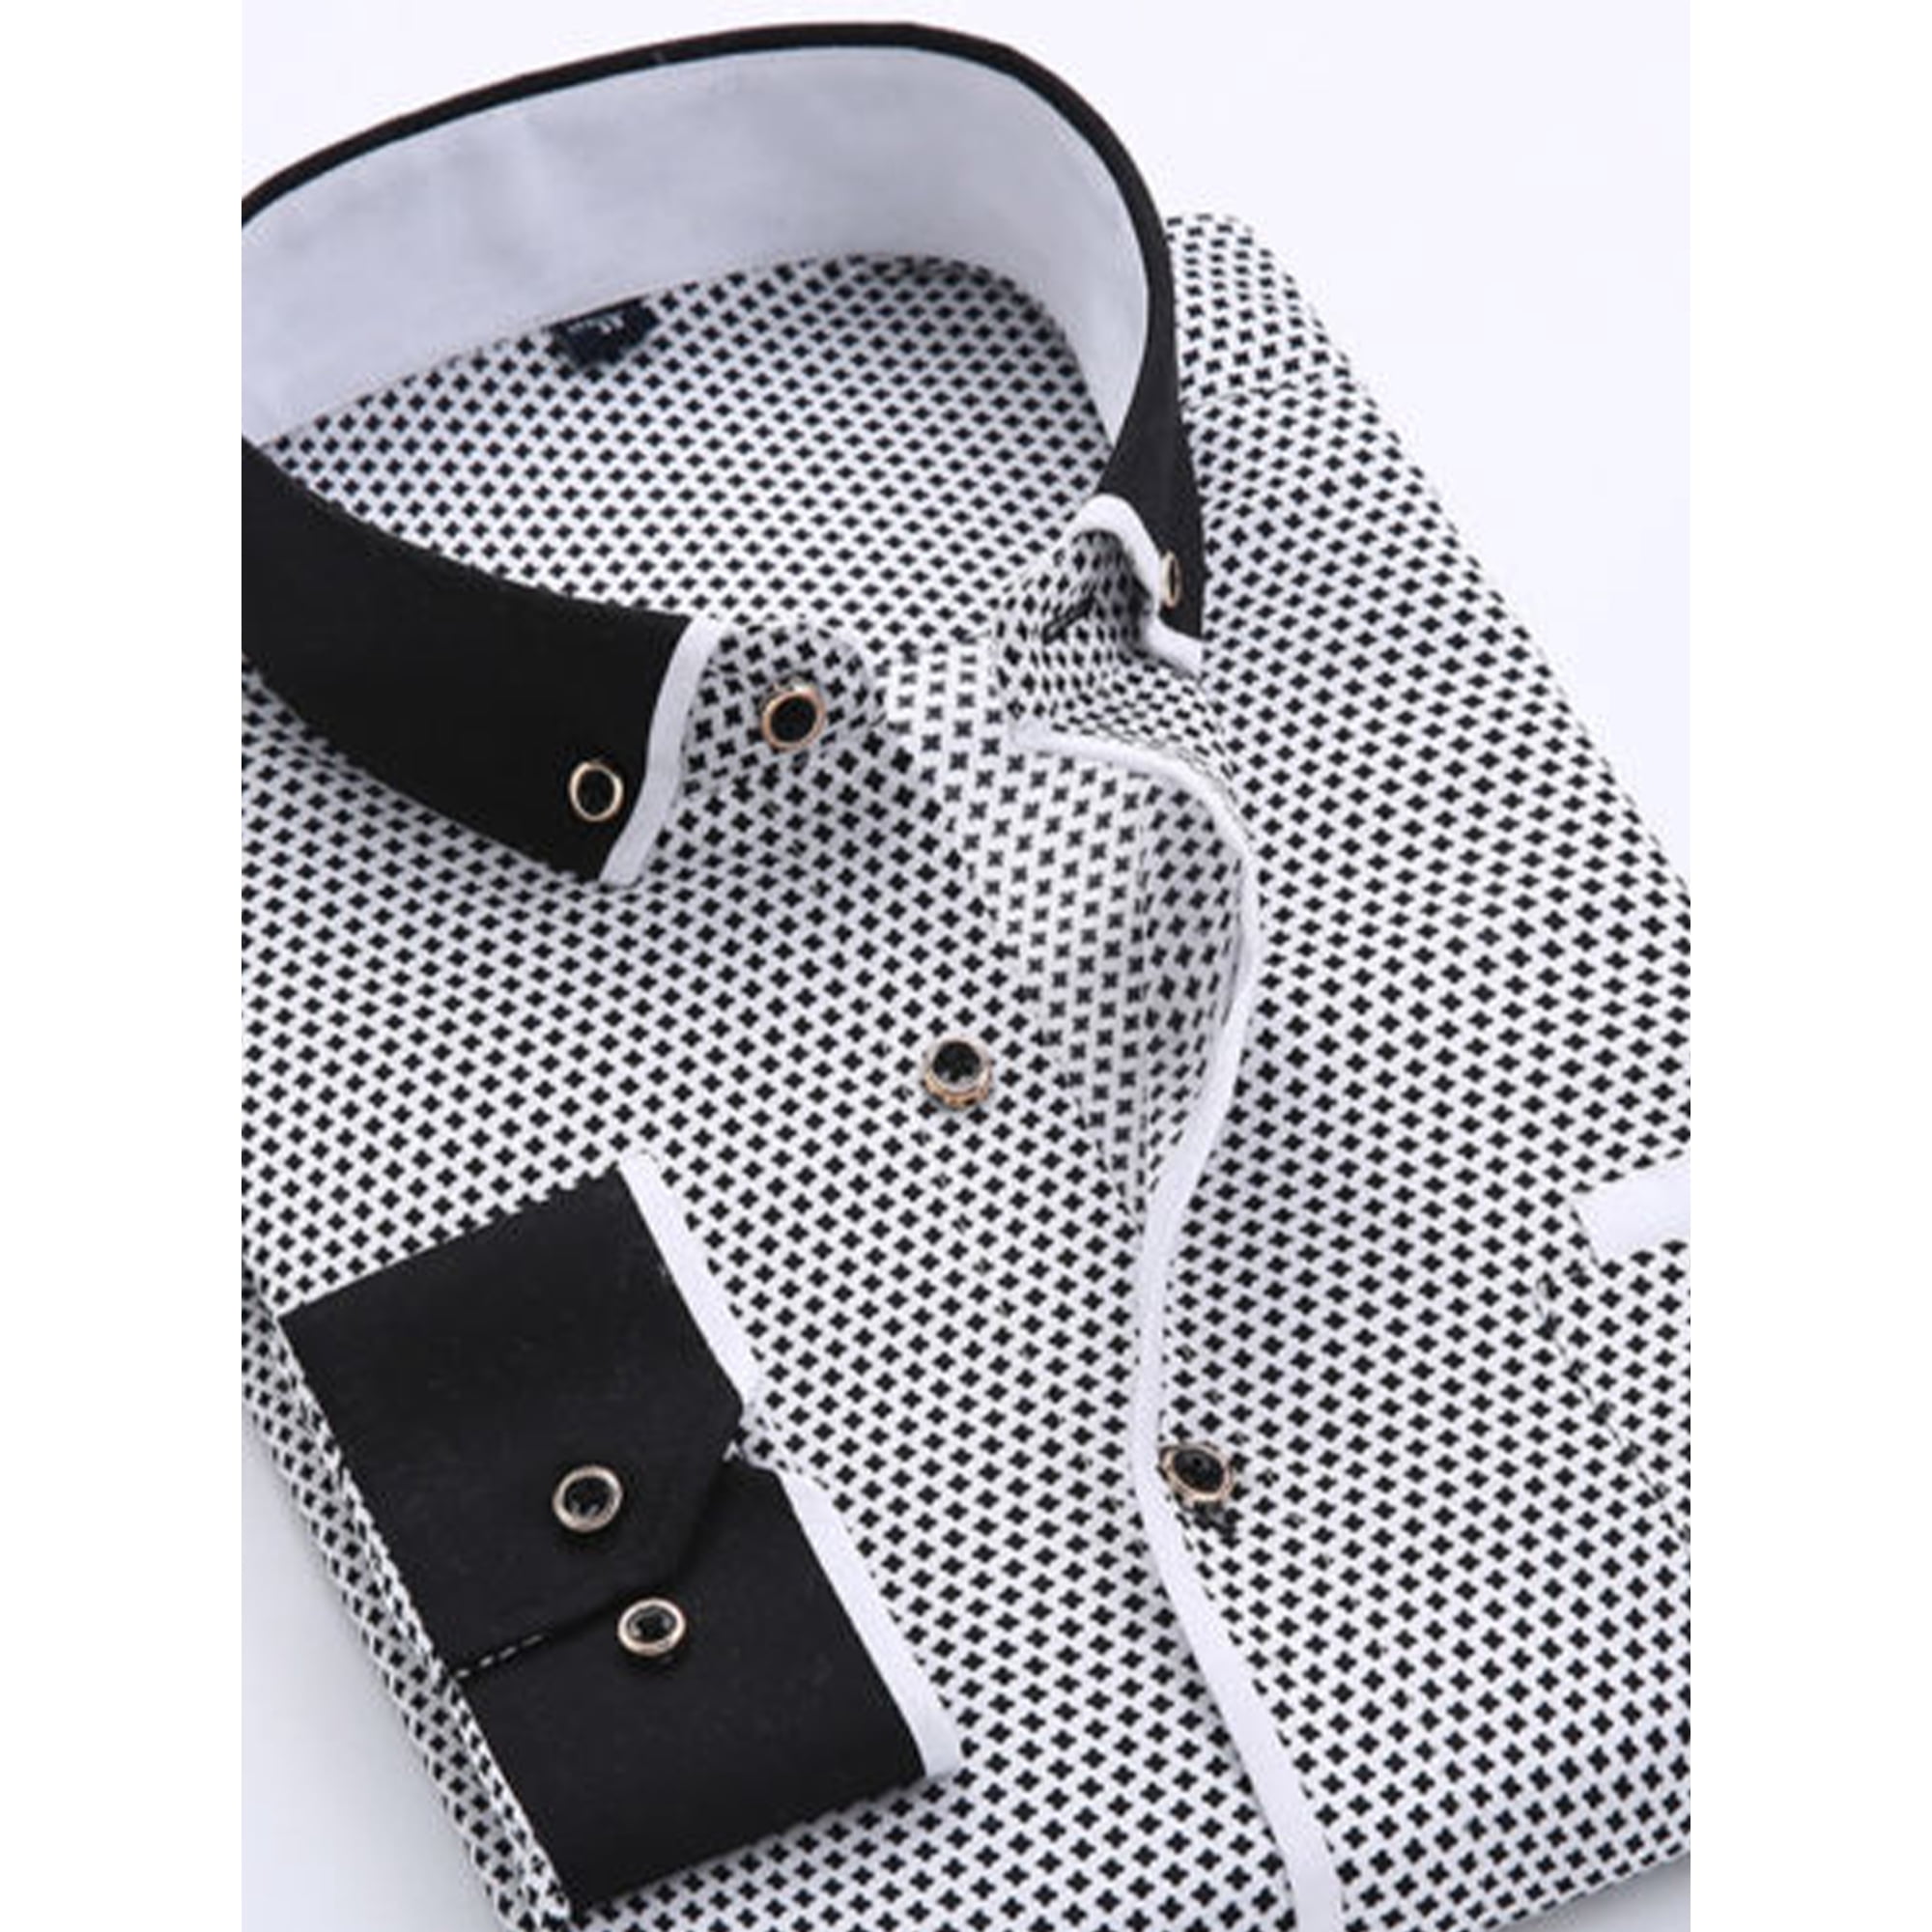 Black/White Men's Long Sleeve Polka Dot Shirt Casual Business Slim